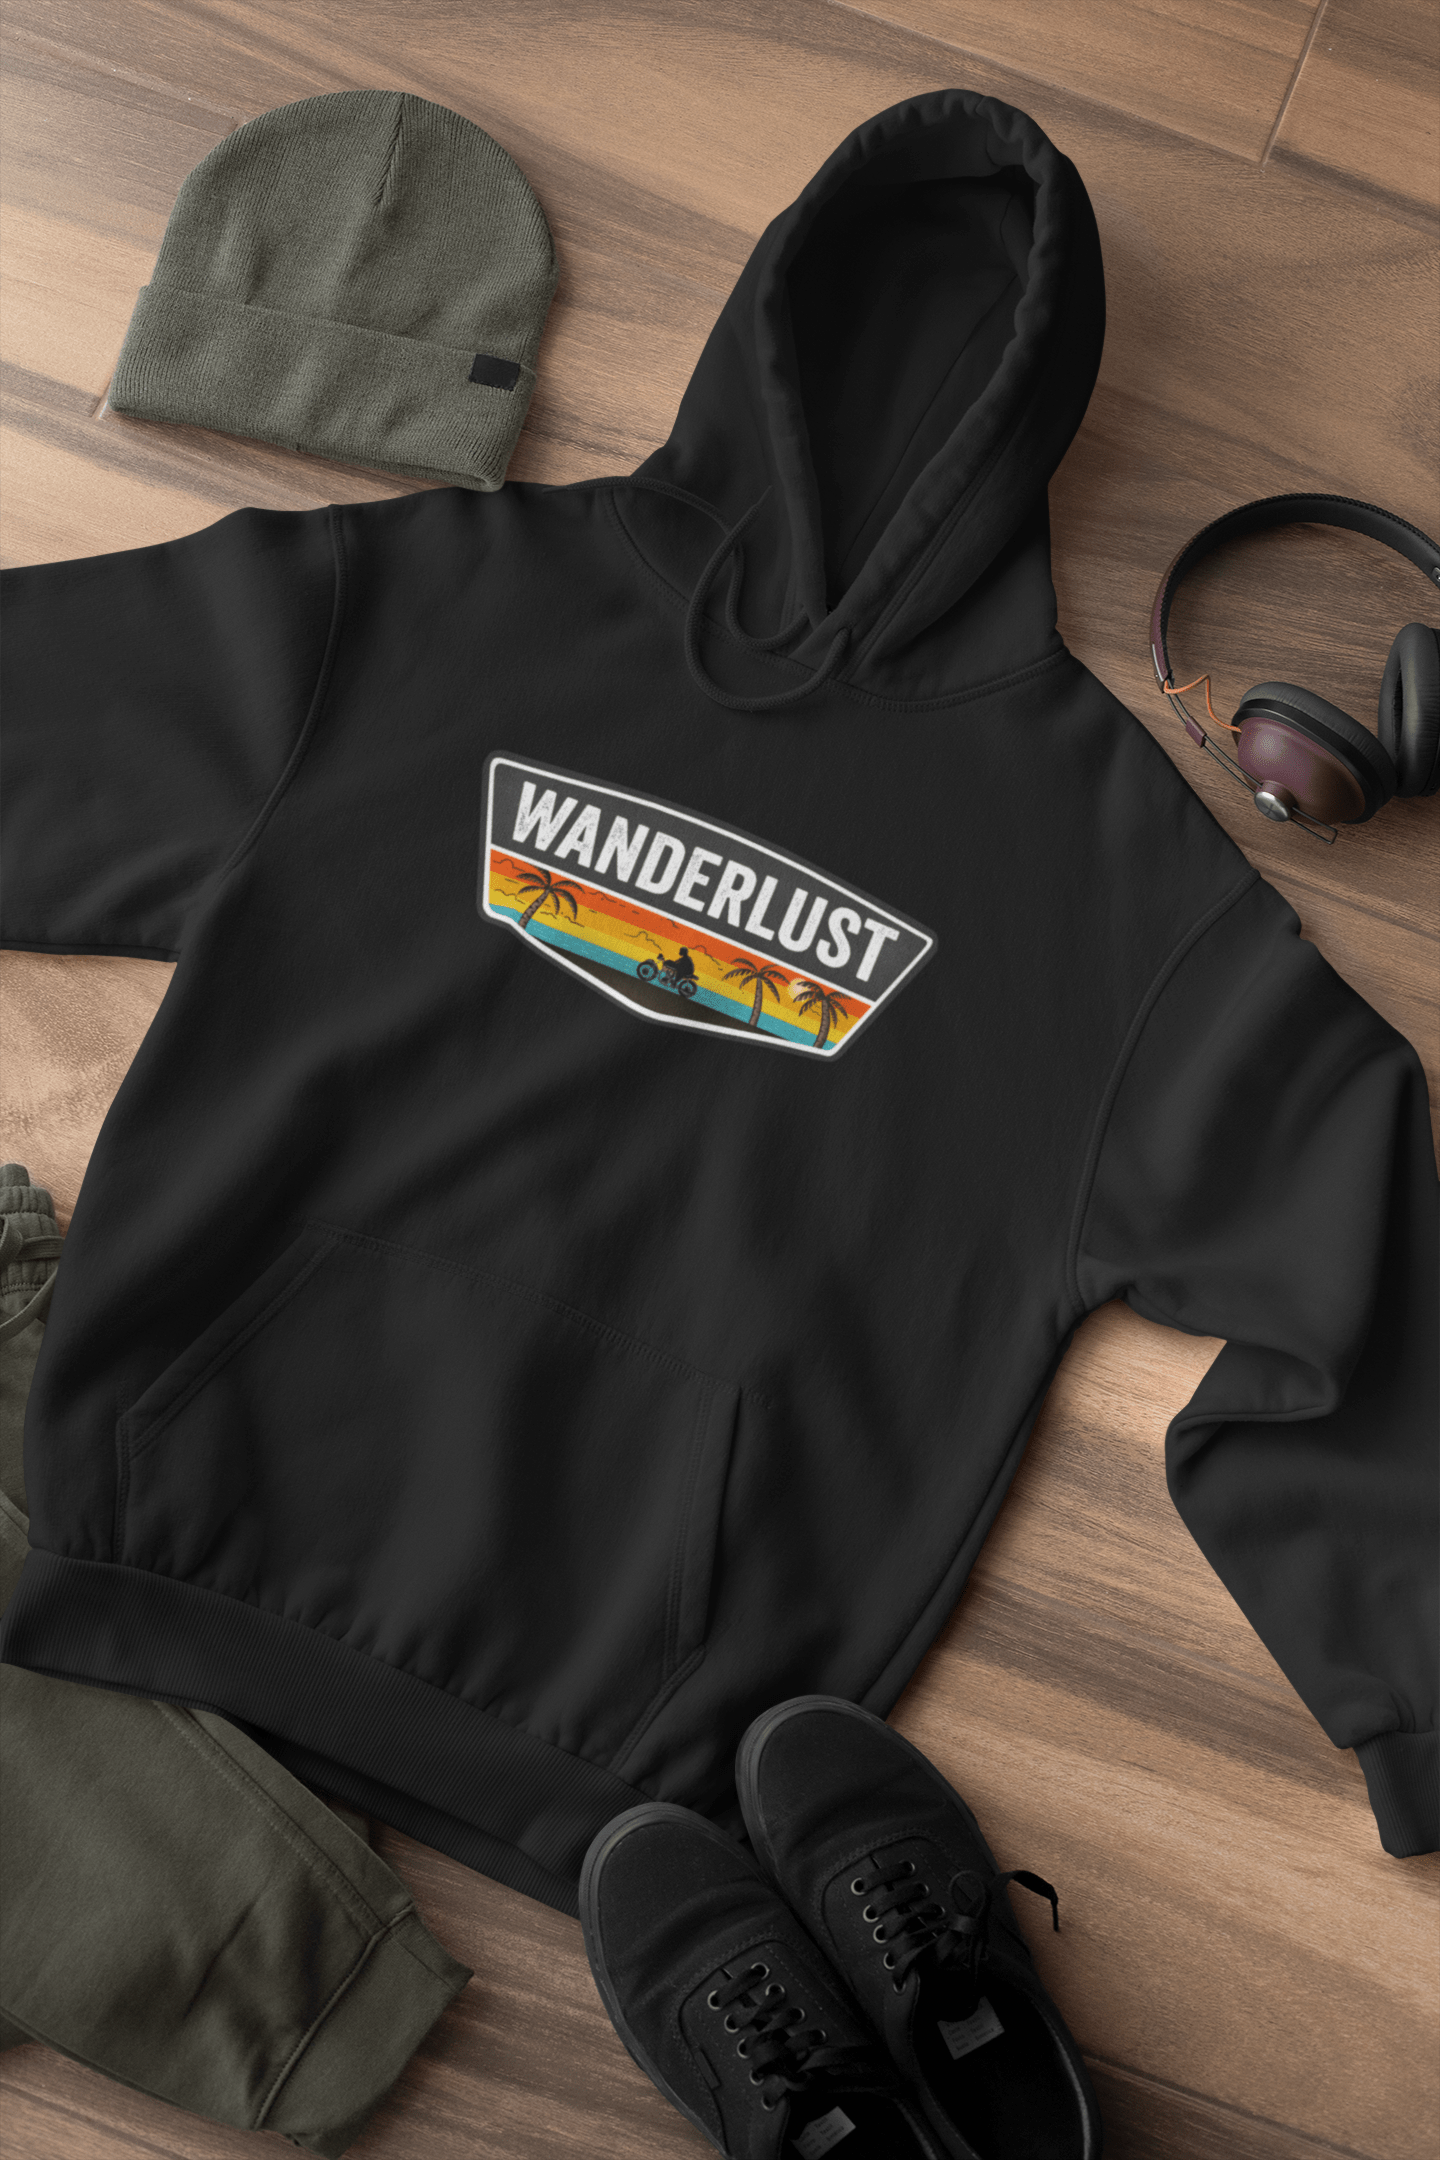 " WANDERLUST " - WINTER HOODIES